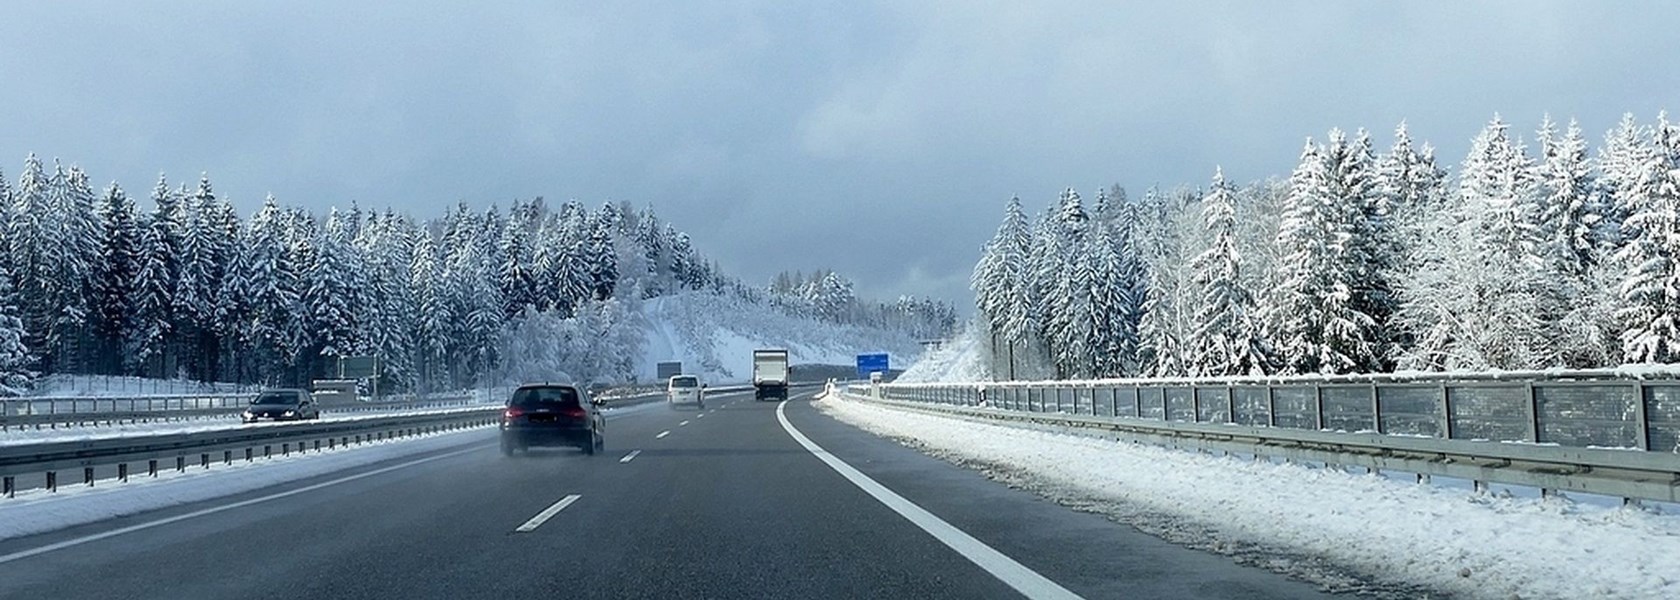 Sicher ankommen bei Eis & Schnee: Tipps zum Fahren im Winter – BMK